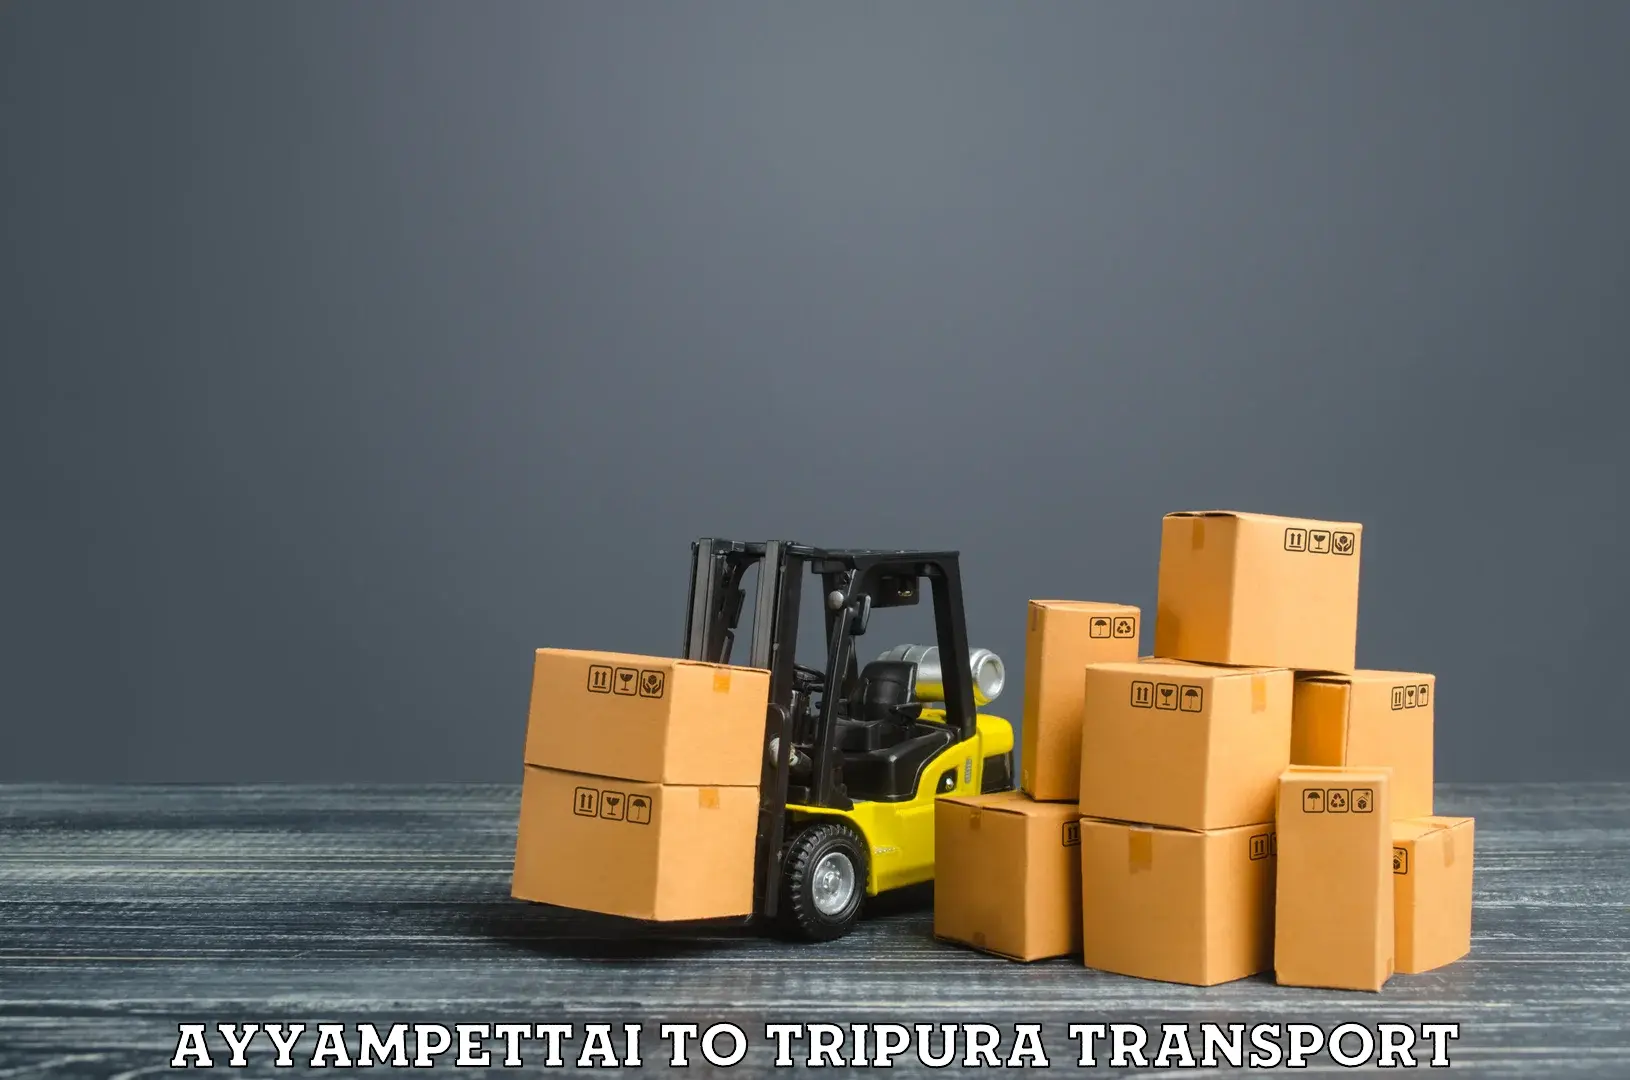 Online transport booking Ayyampettai to Tripura